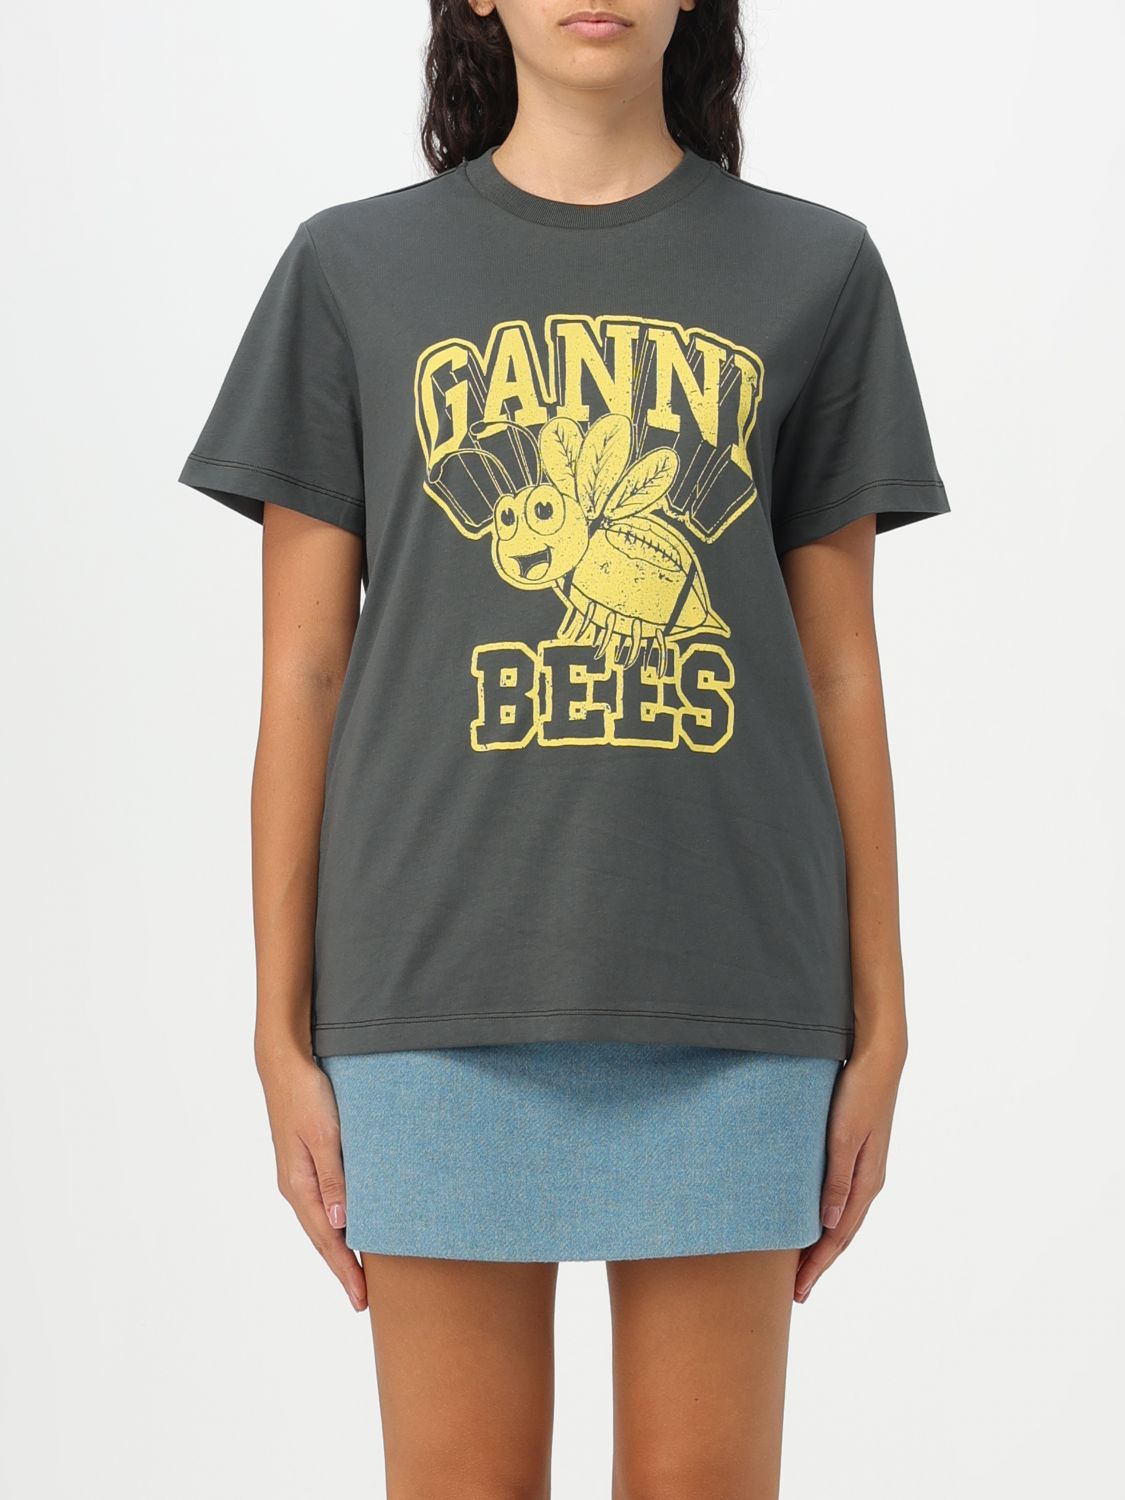 GANNI, Bees Print T-Shirt, Women